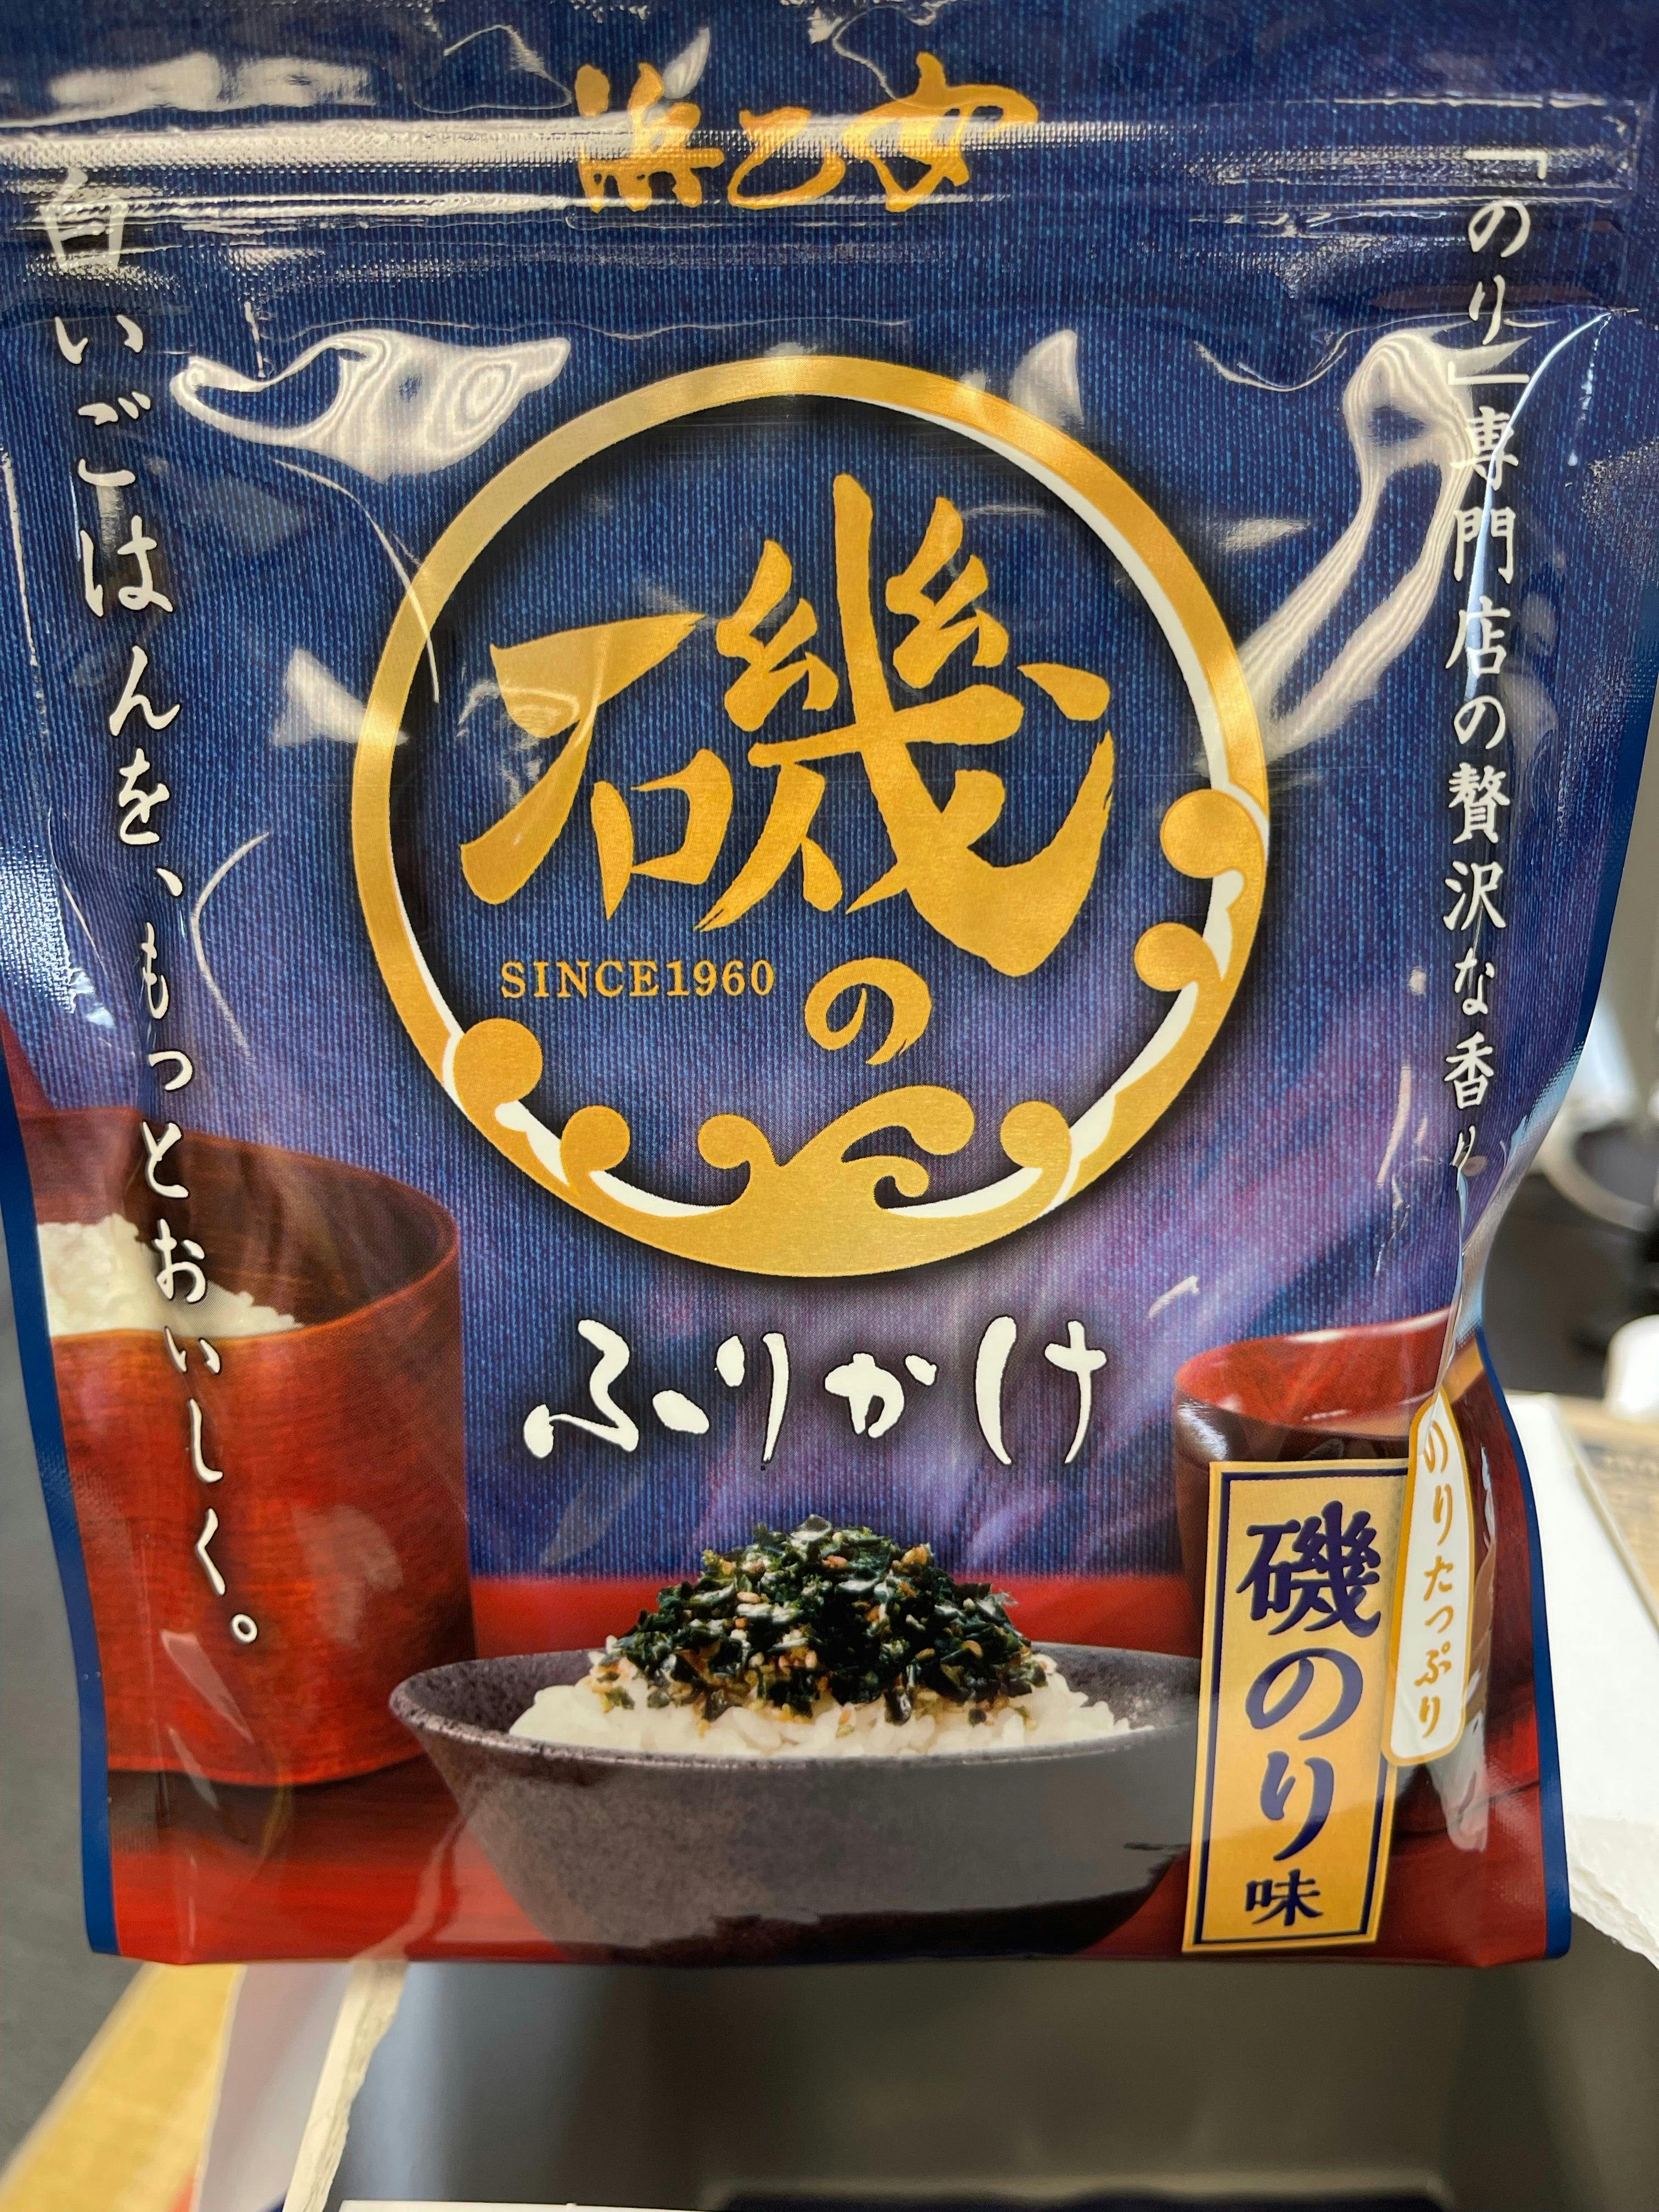 日本 紫菜 青菜 芝麻拌饭 50年热销产品